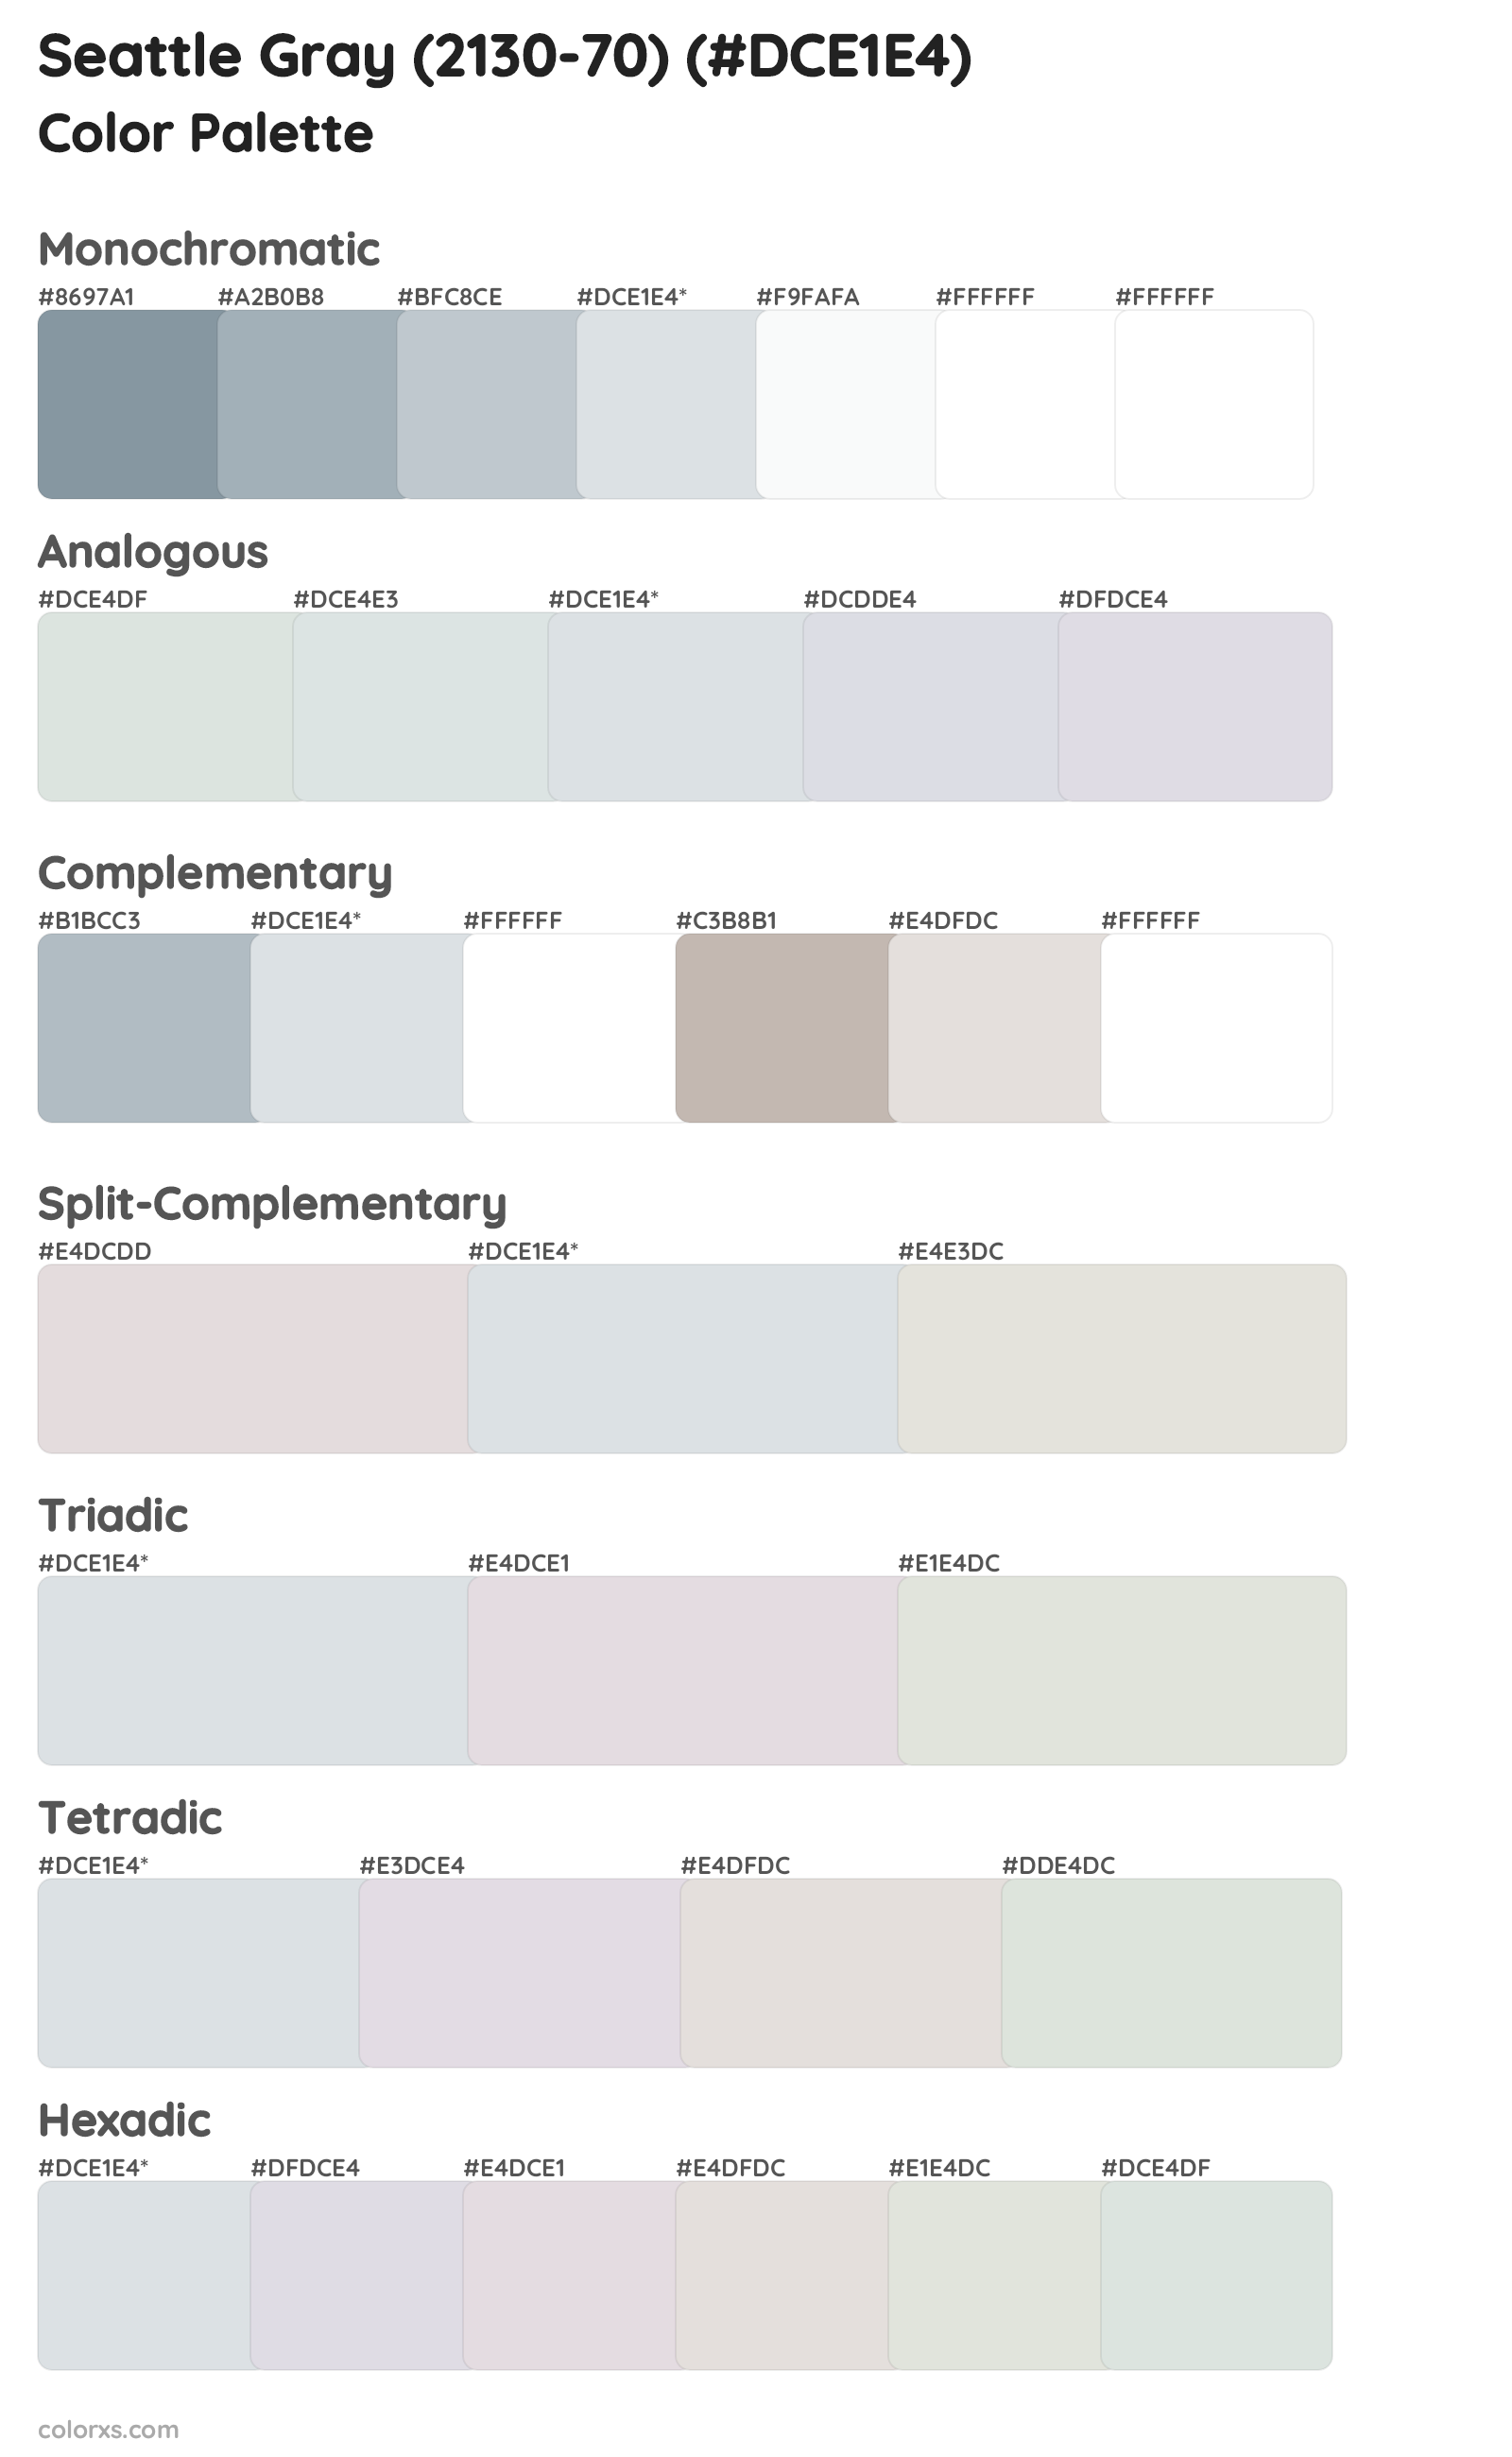 Seattle Gray (2130-70) Color Scheme Palettes